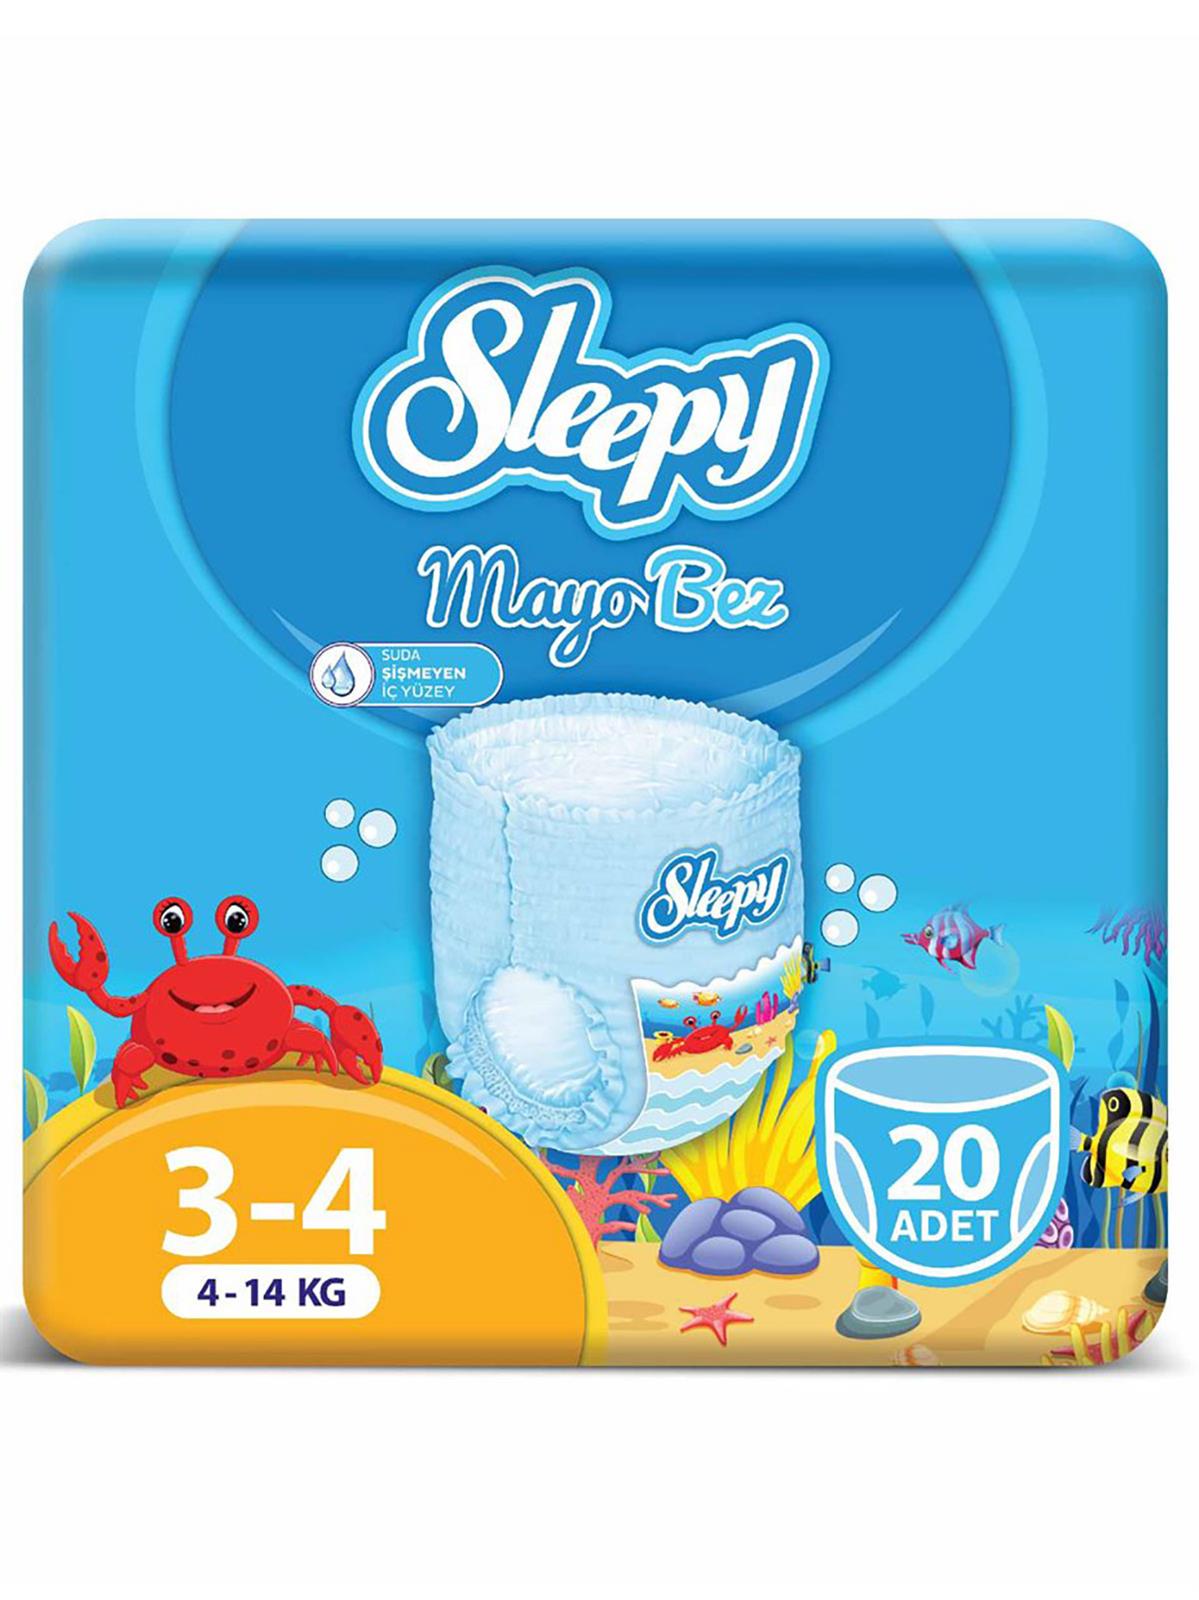 Sleepy Mayo Külot Bez 3-4 Beden Maxi 20 Adet